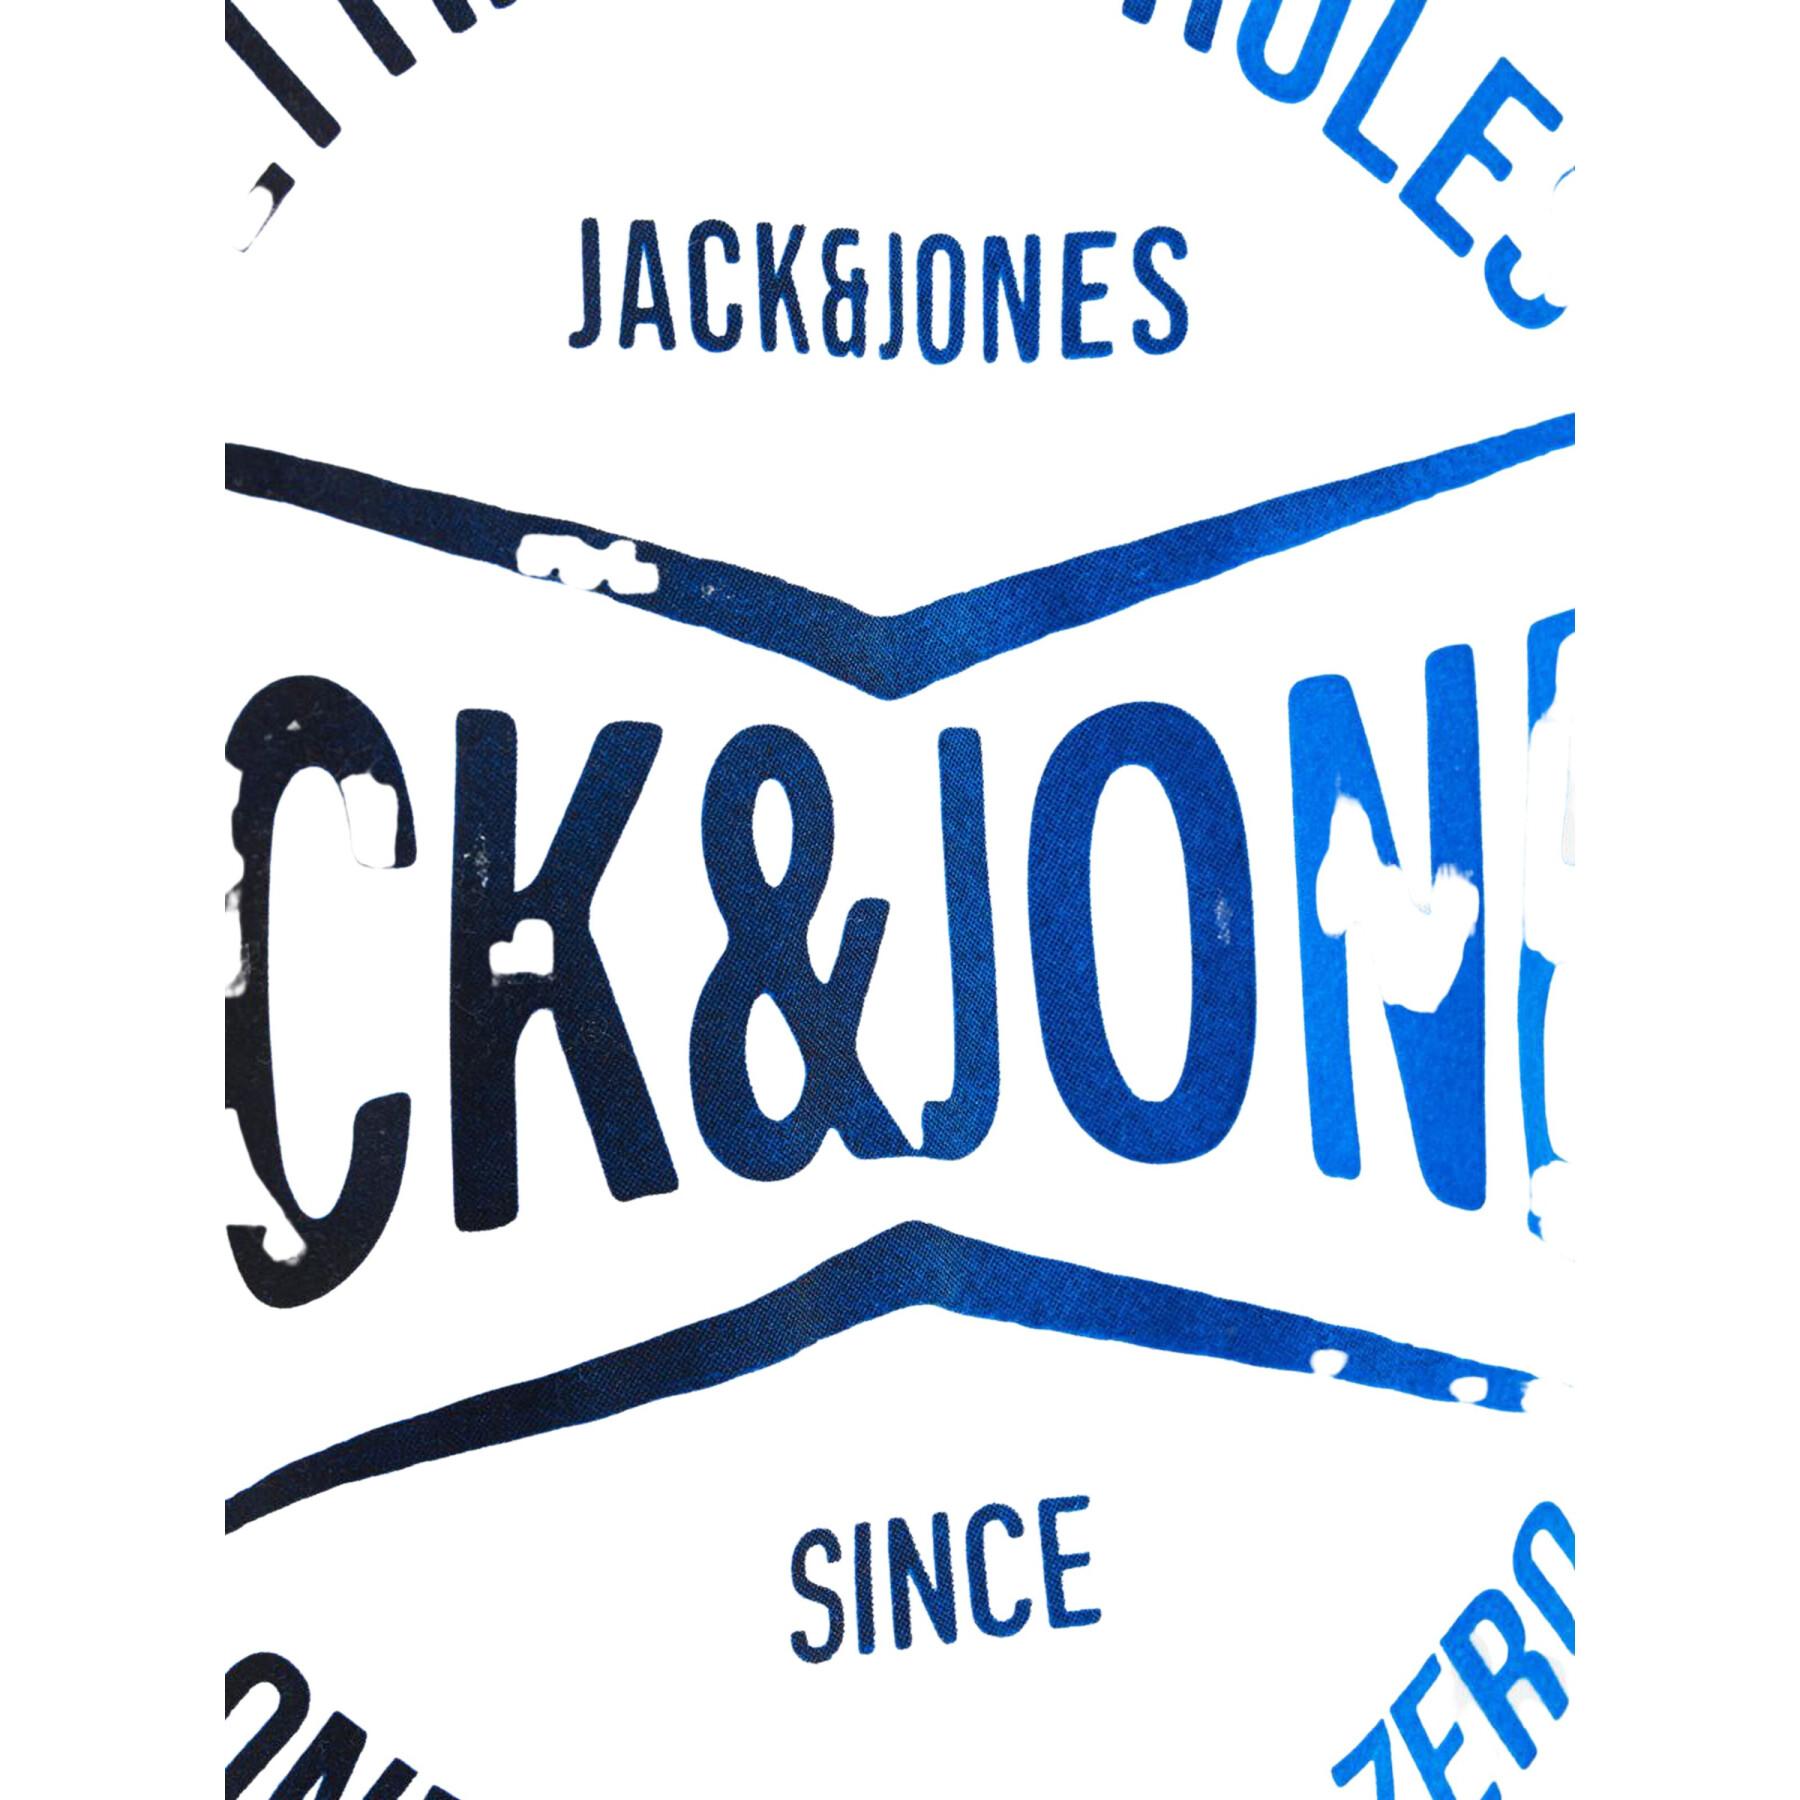 T-shirt Jack & Jones crew